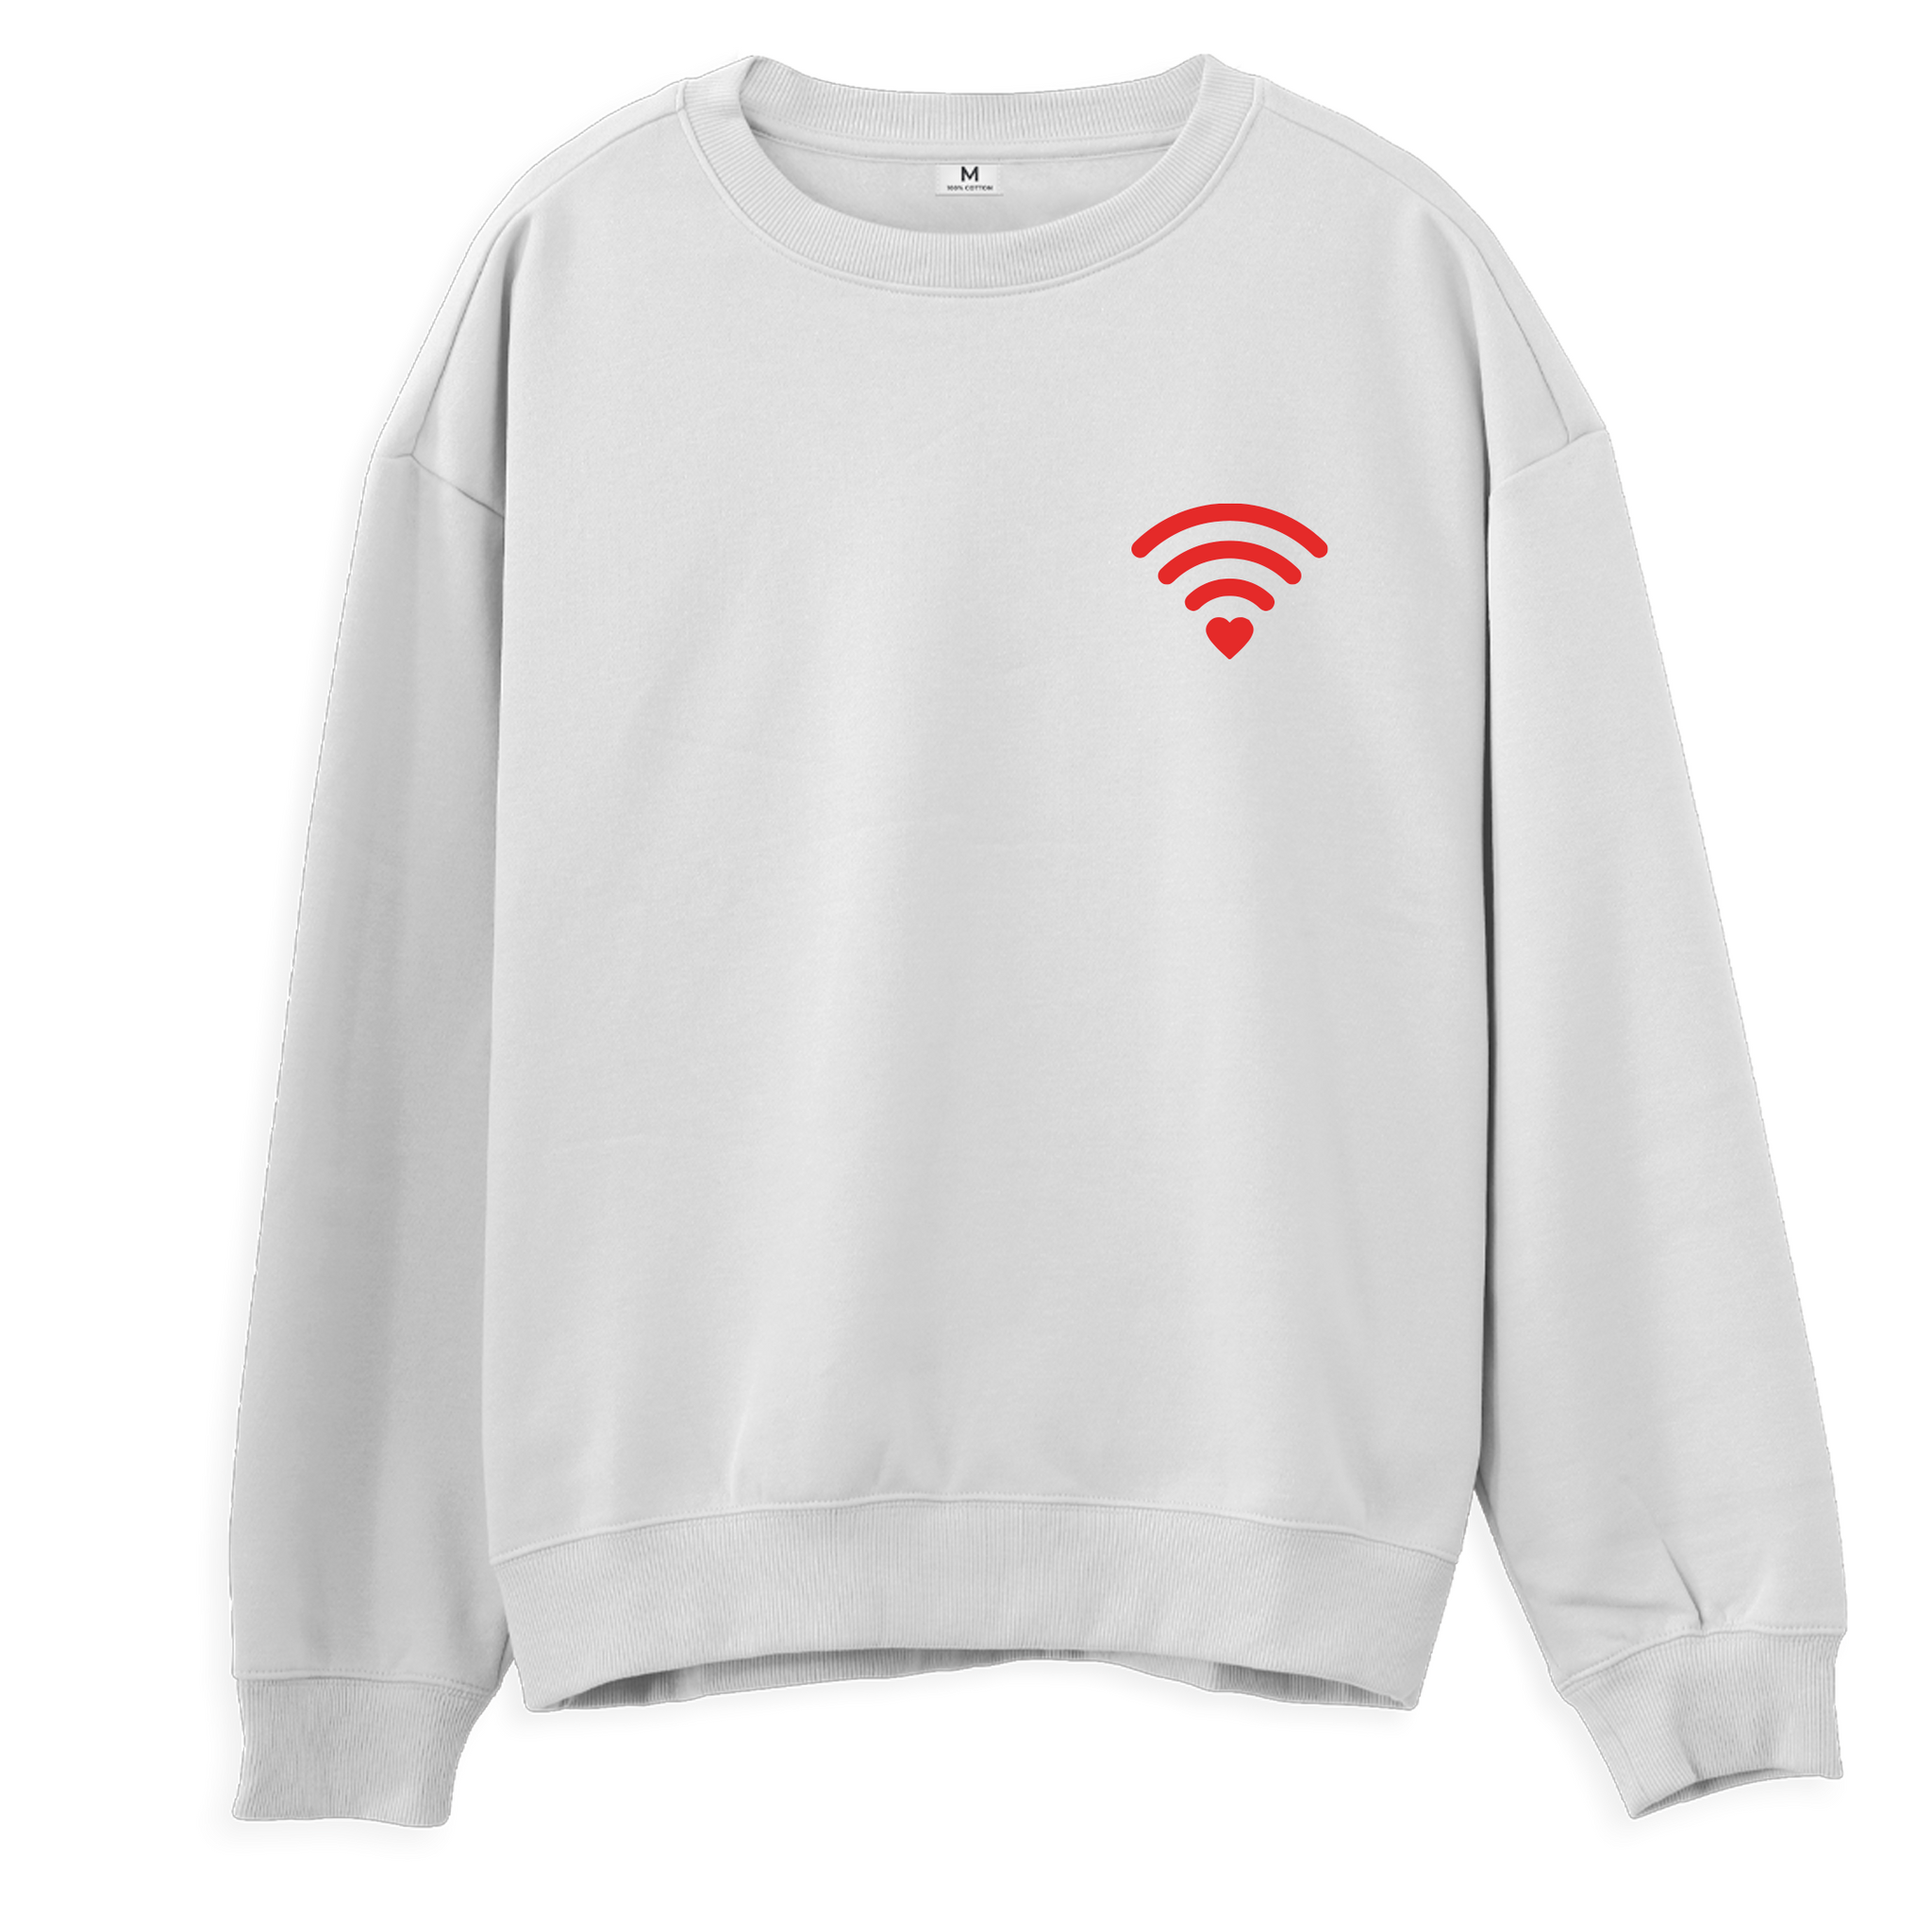 Love Wifi - Sweatshirt